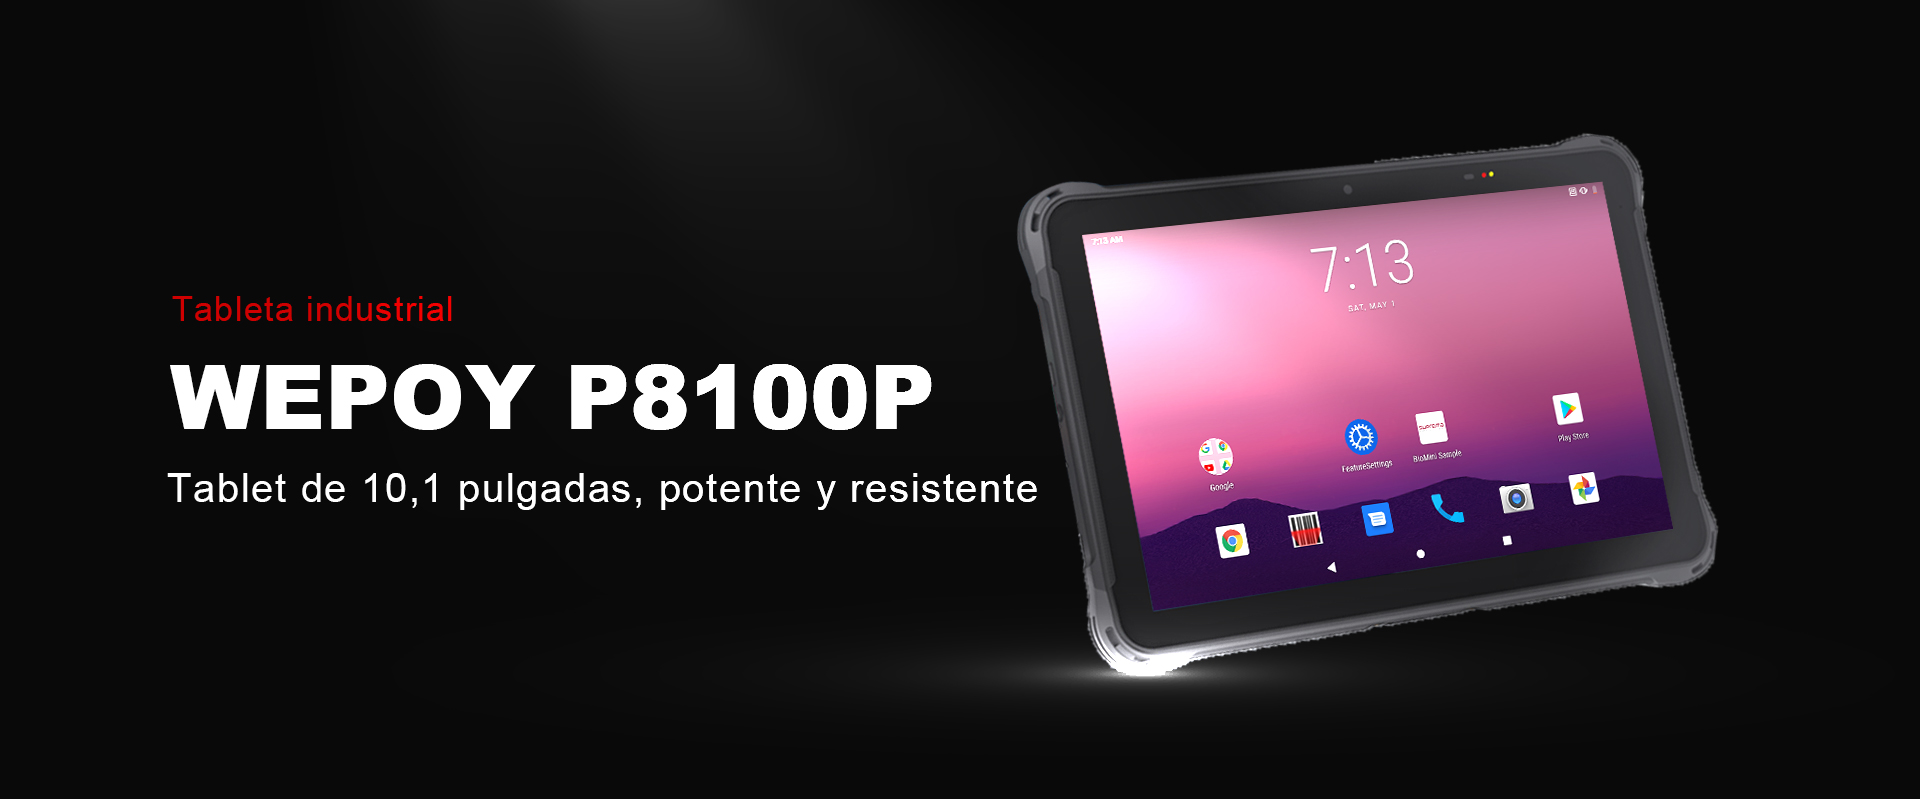 industrial-tablet_01.jpg